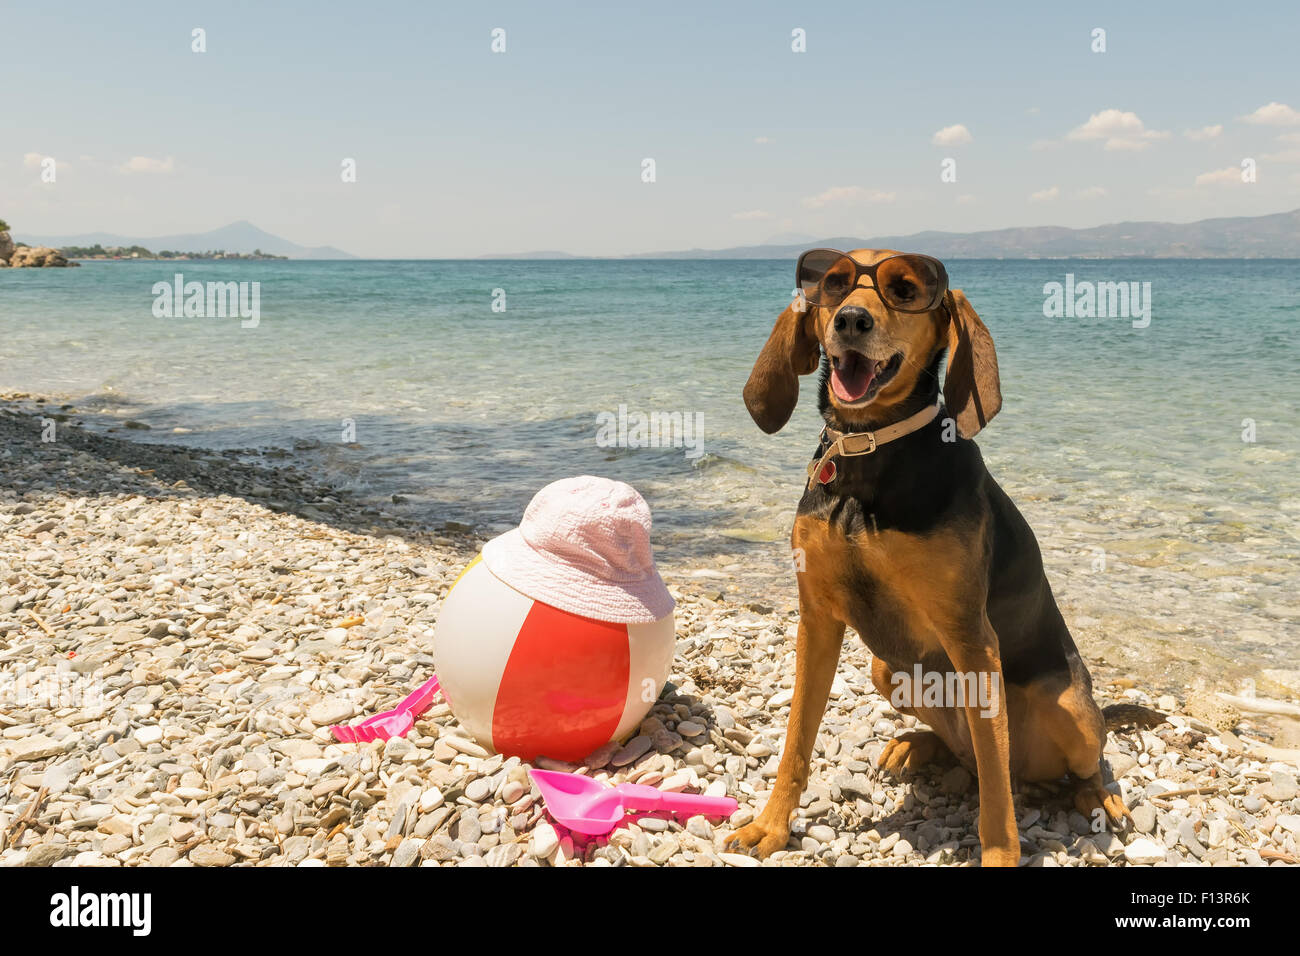 Hund am tragen Sonnenbrillen Porträt zu jagen Stockfotografie Alamy